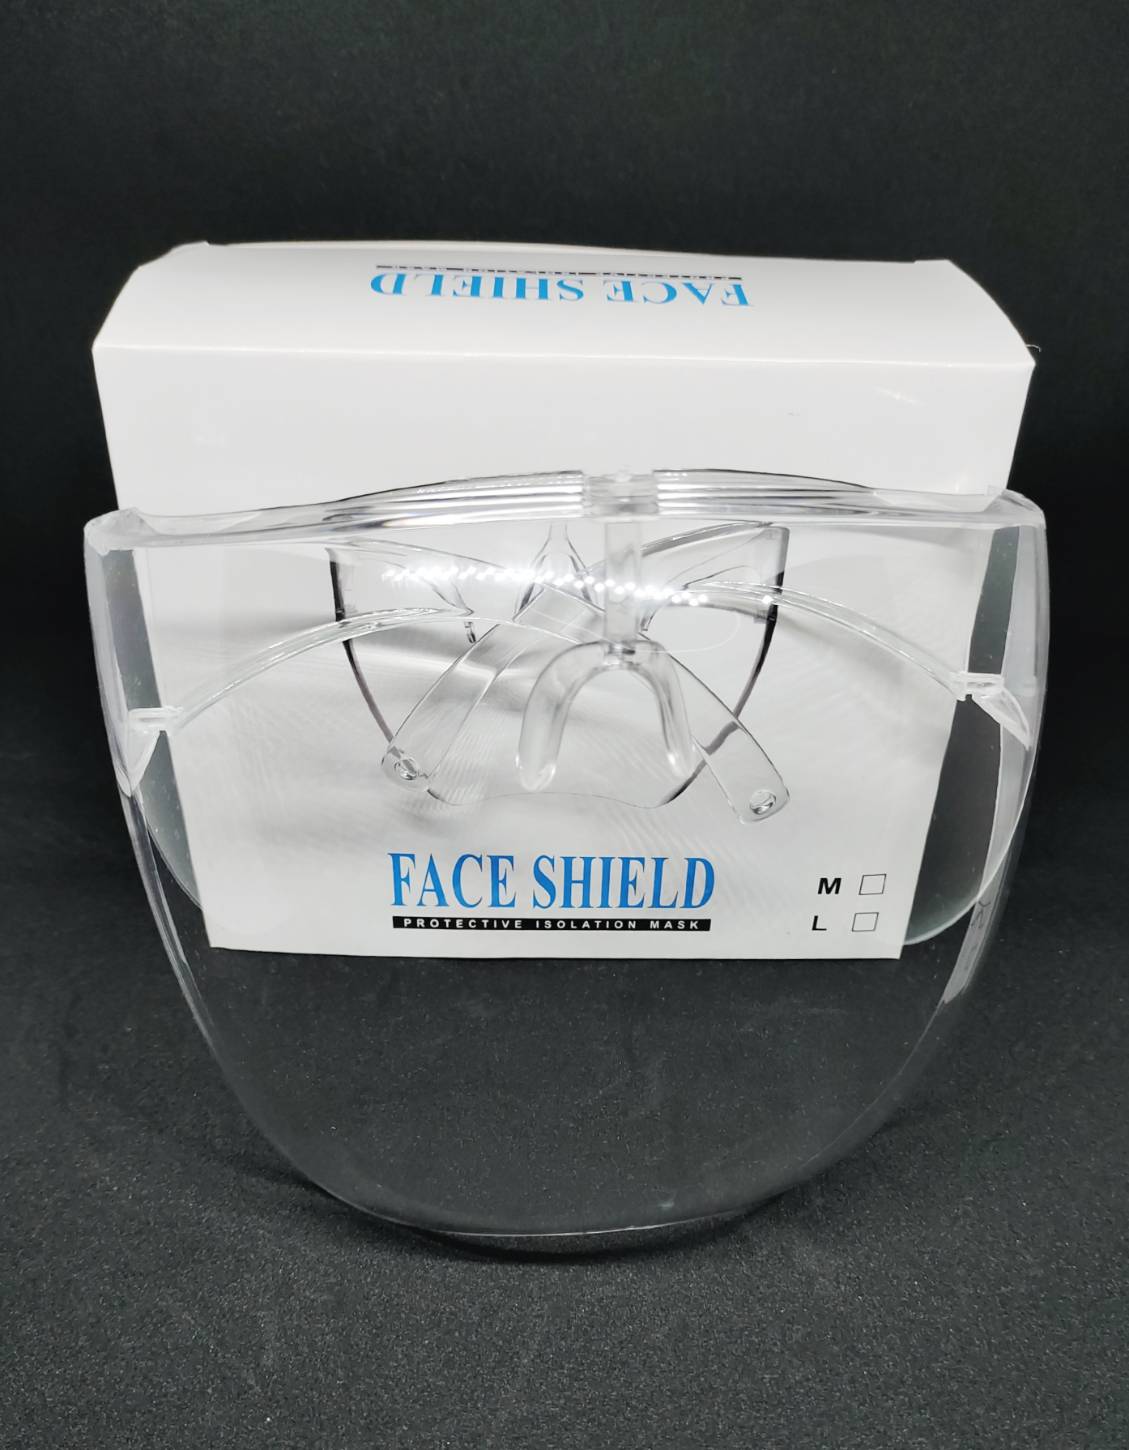 เฟสชิล Face shield พร้อมกรอบแว่น พร้อมส่งจากไทยใช้ โค้ทส่งฟรีได้